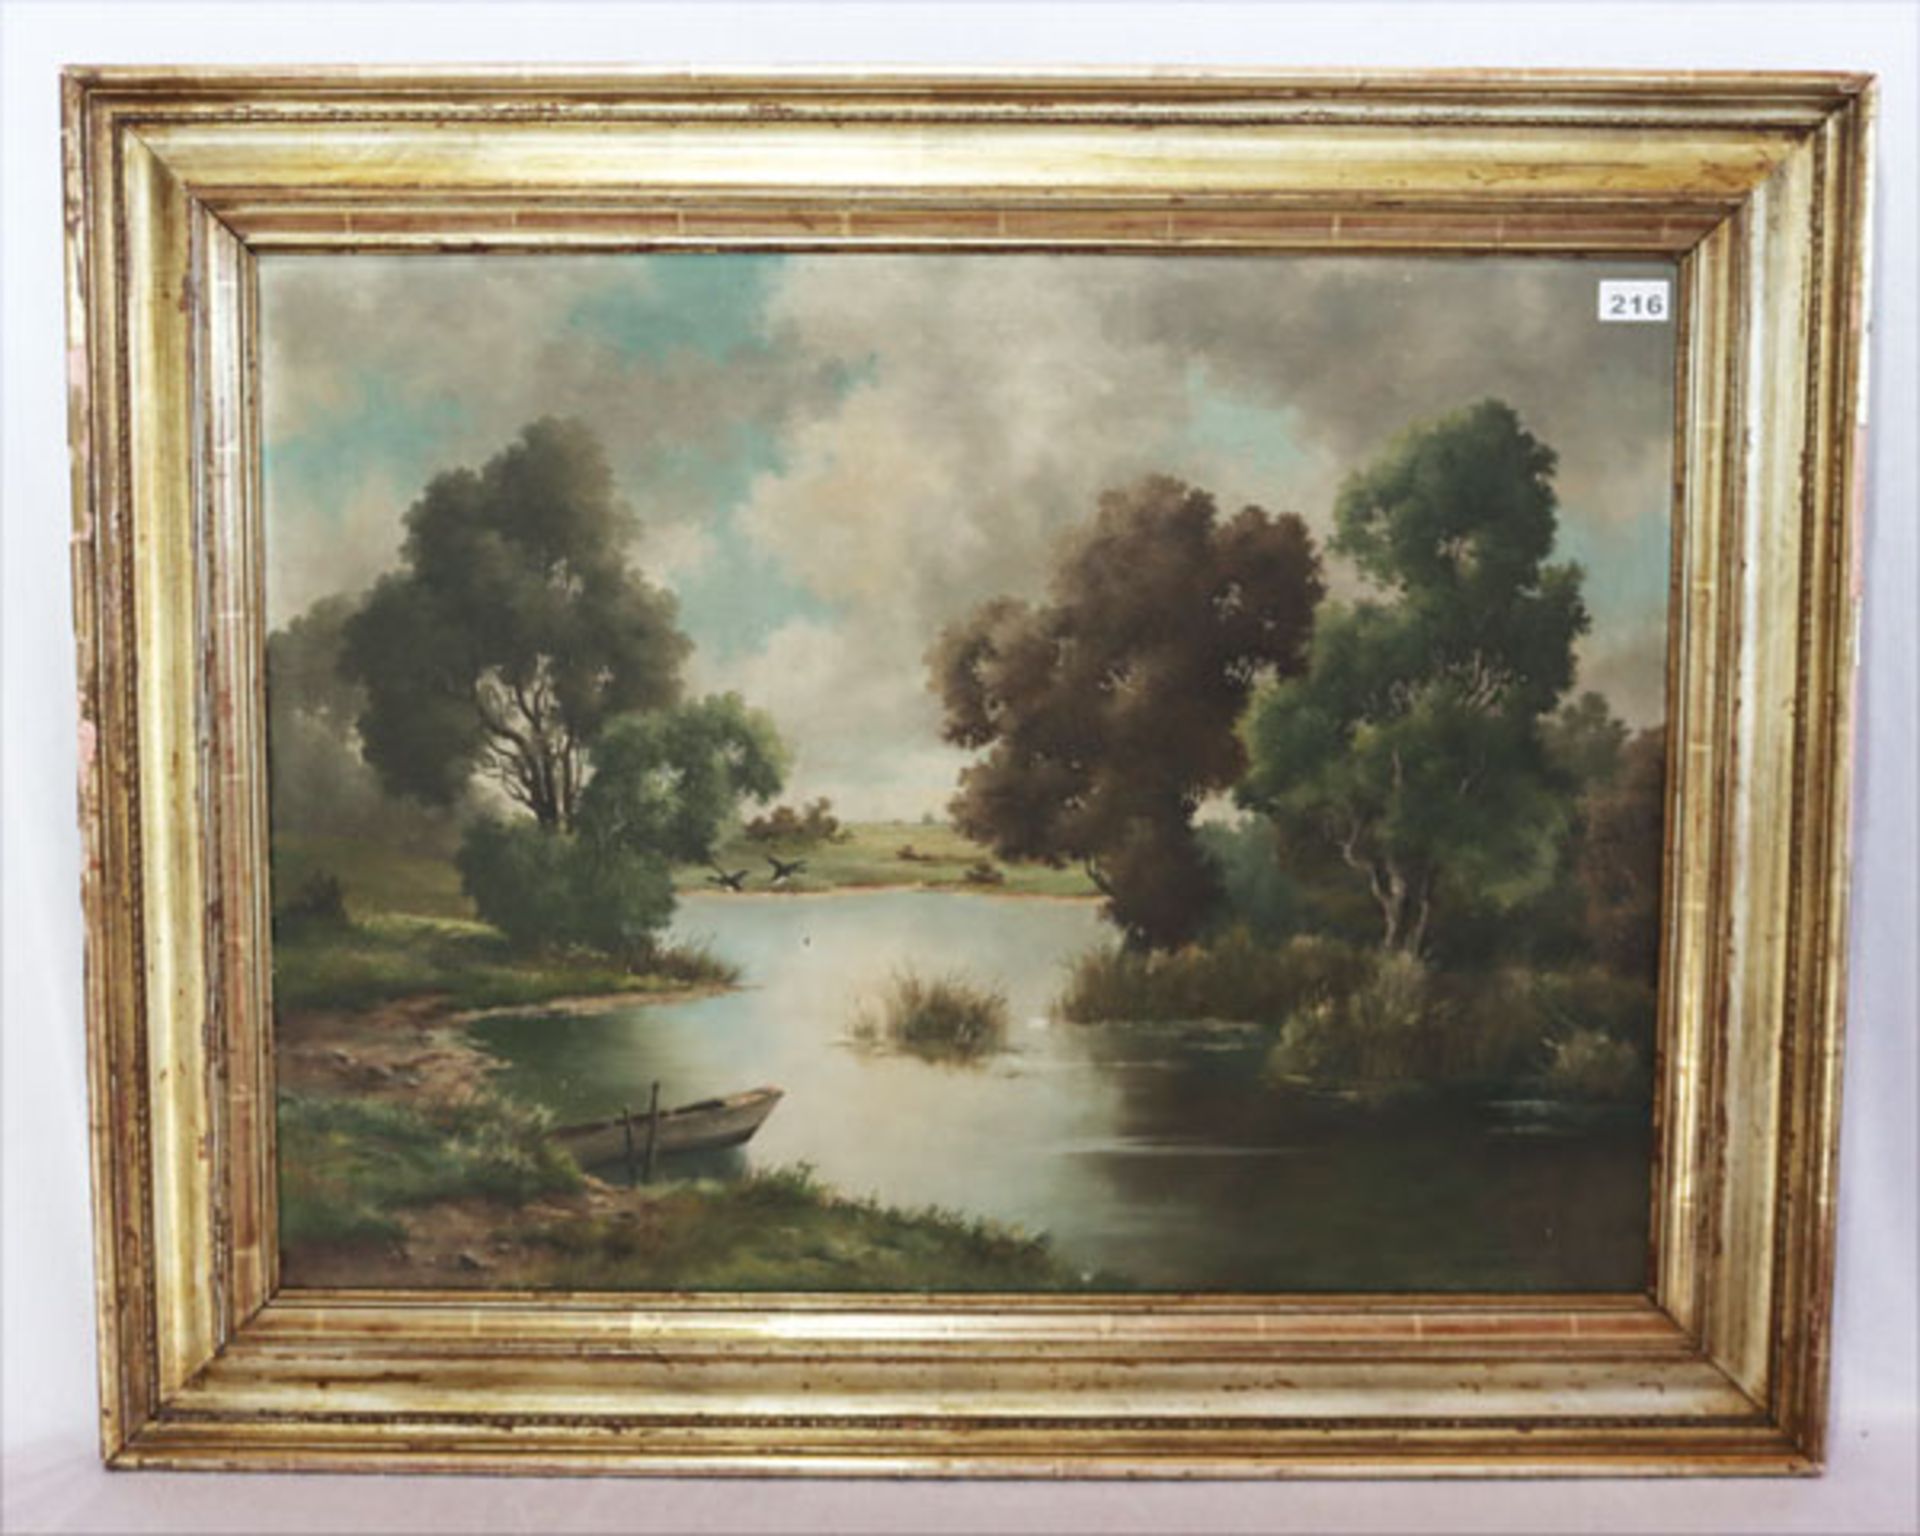 Gemälde ÖL/LW 'Landschafts-Szenerie mit Bachlauf und Wildenten', signiert K. Werner, München 49,